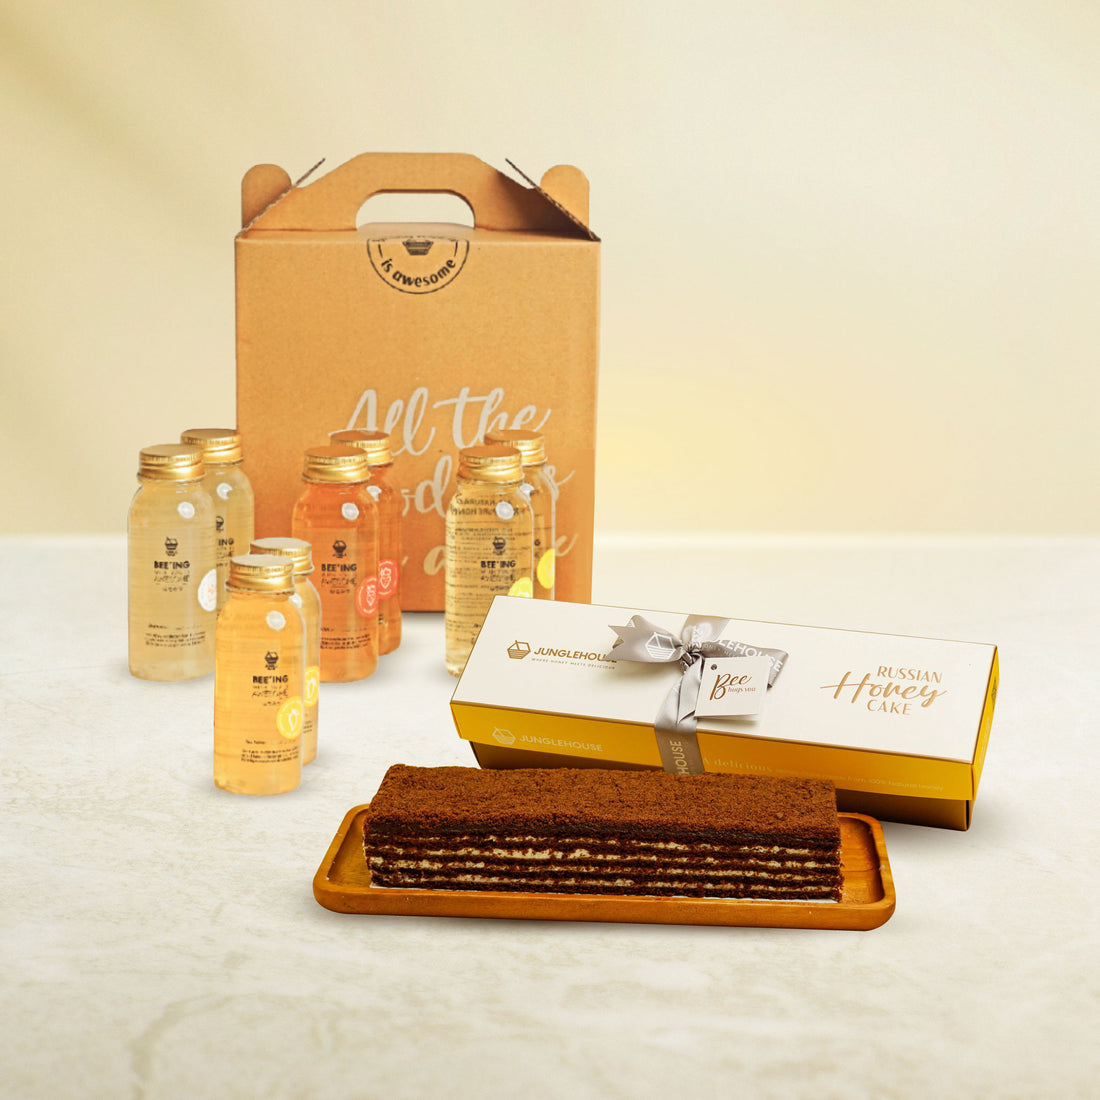 Russian Honey Cake Premium Gift Box (10 serves) + Super Immunity Honey Juice Pack